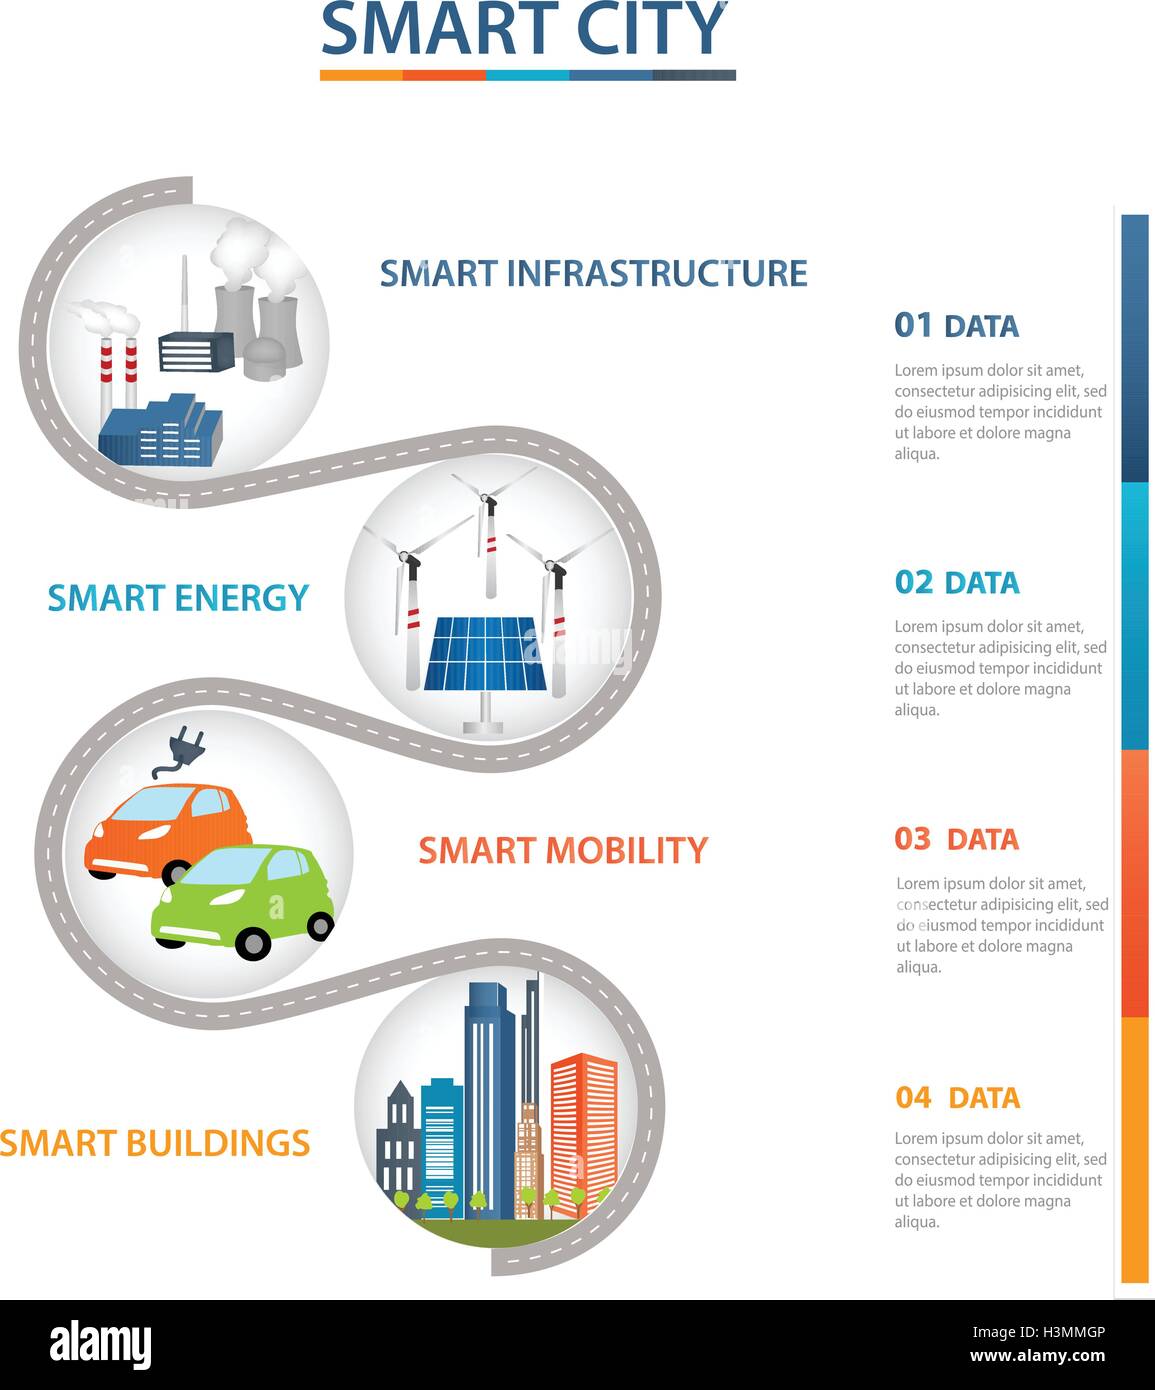 Smart-City-Design mit Zukunftstechnologie für das Leben. Smart Grid-Konzept. Industrie, erneuerbare Energien und Smart-Grid-Technologie Stock Vektor